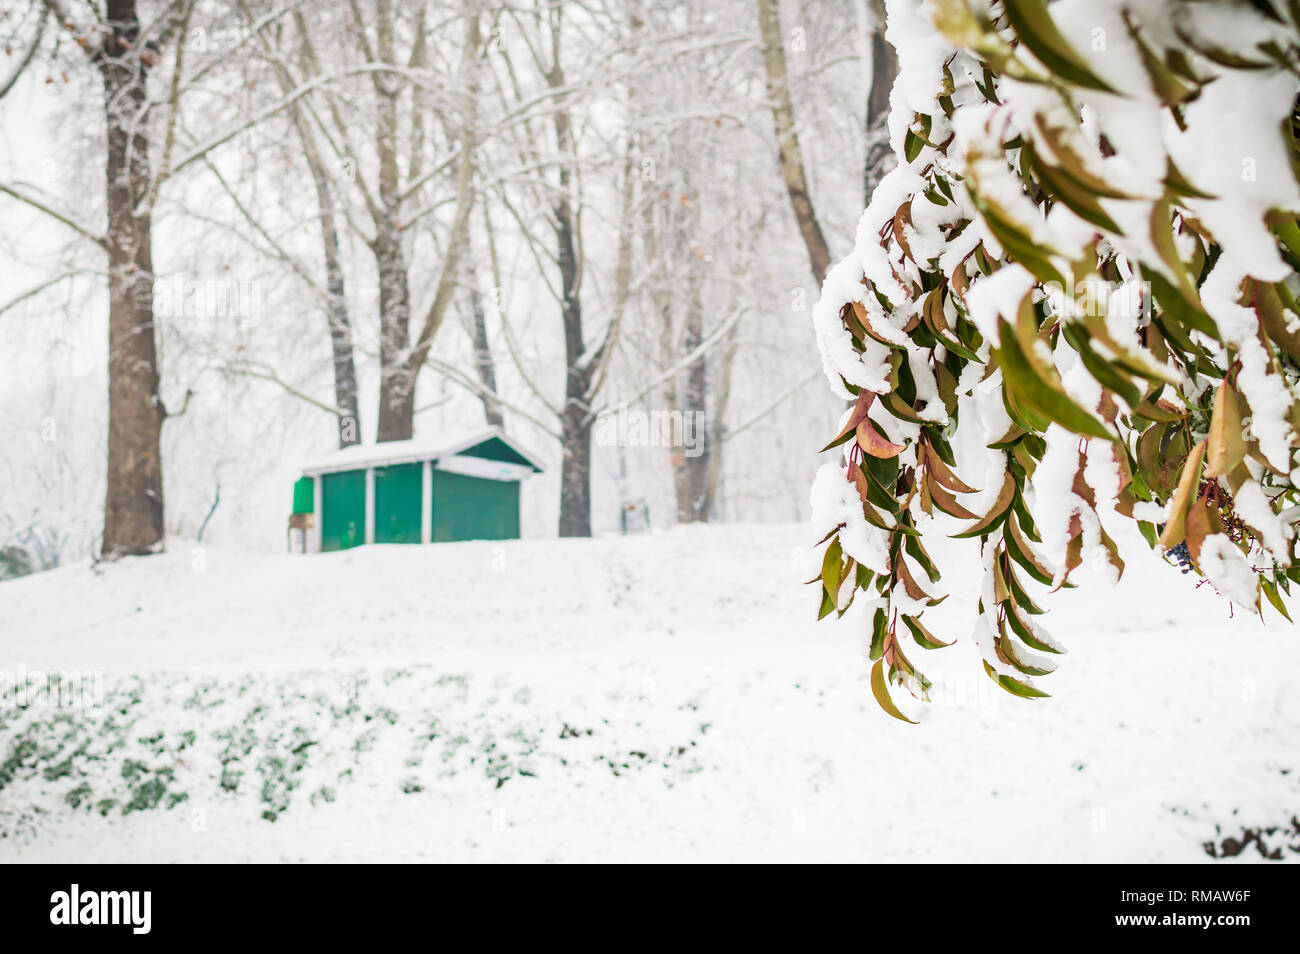 Un colore verde hut lodge cabina in un fitto bosco durante la stagione di neve. Una casa in un paesaggio invernale Foto Stock